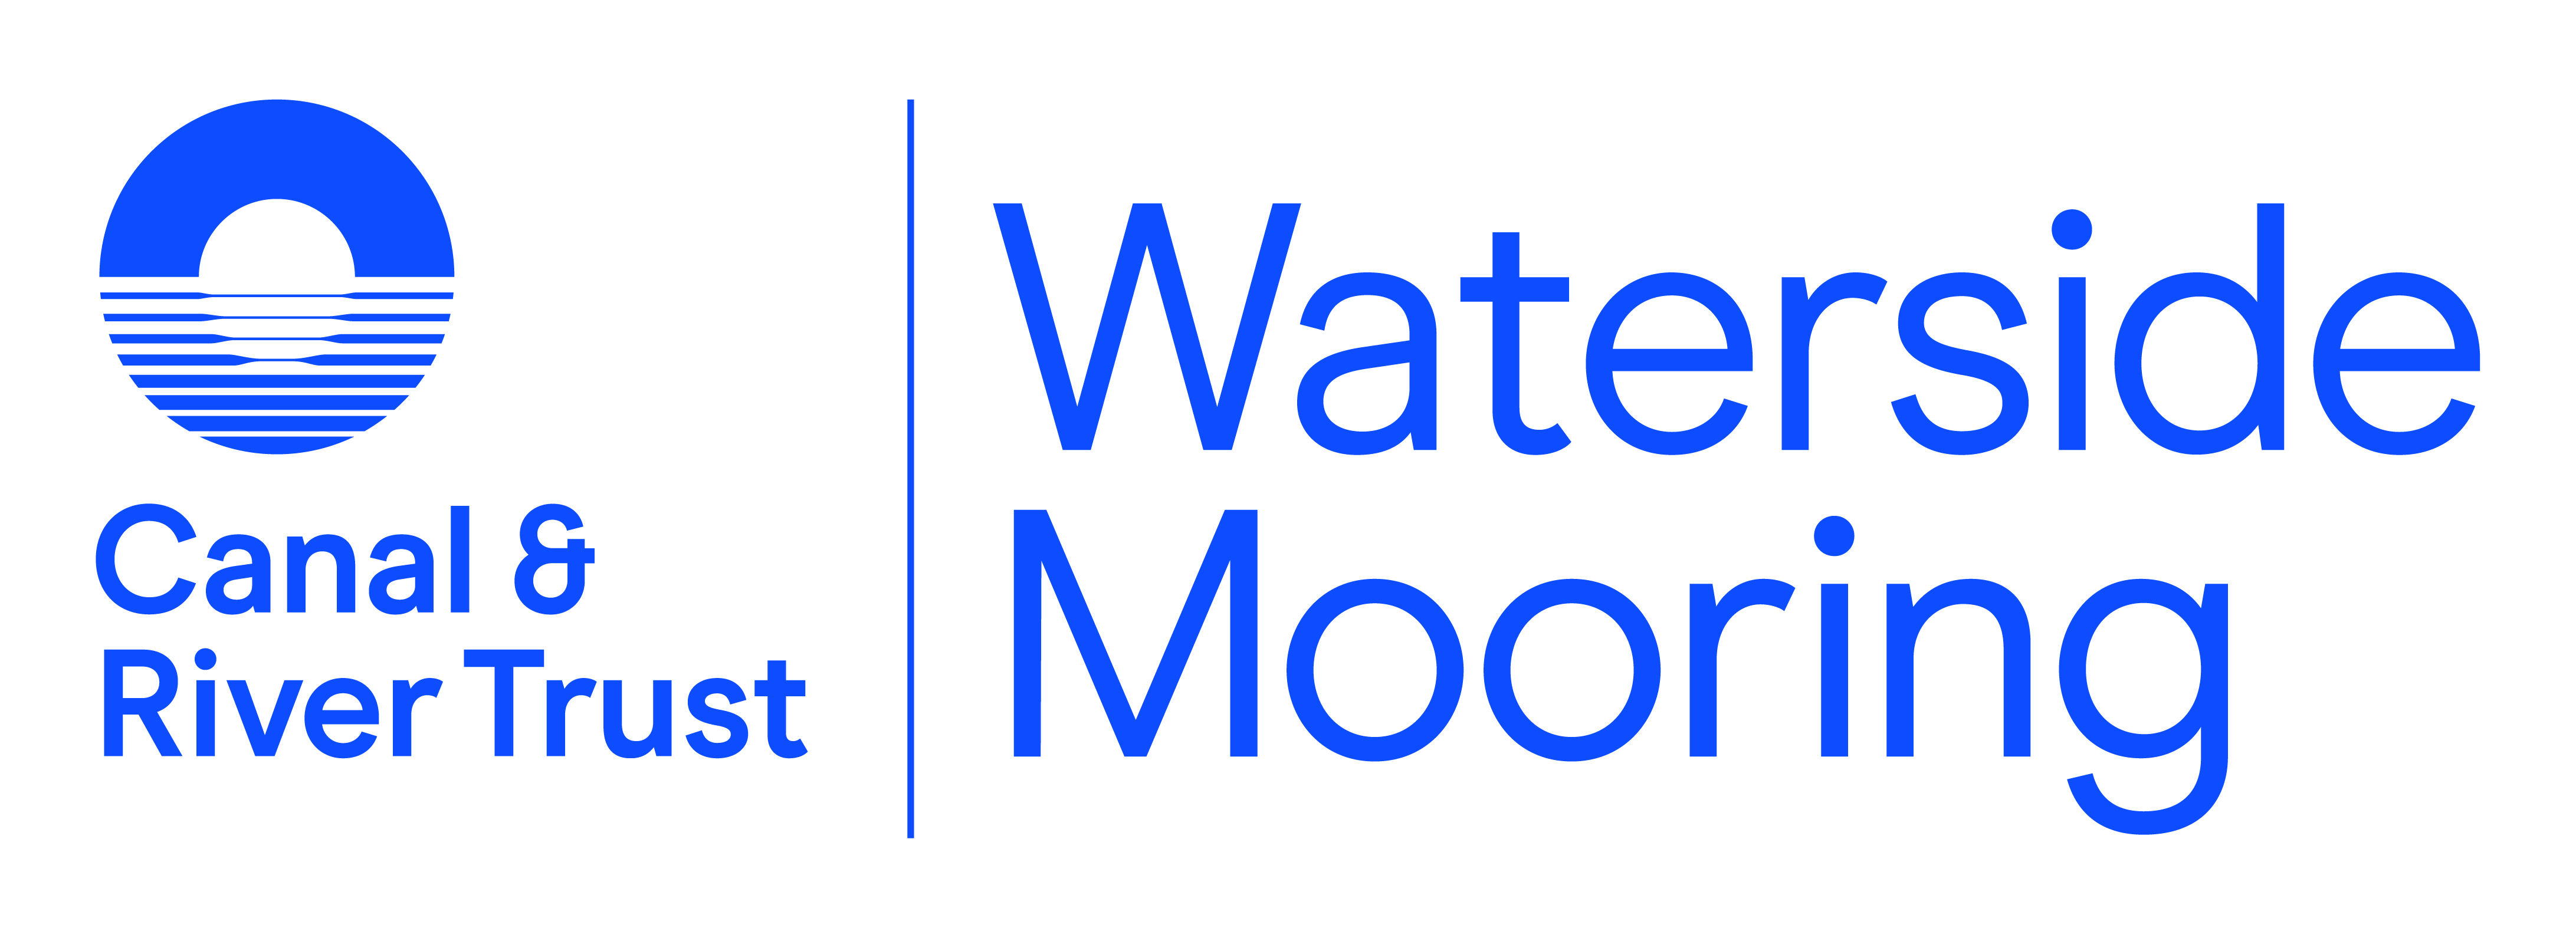 Crt waterside mooring logo horiz